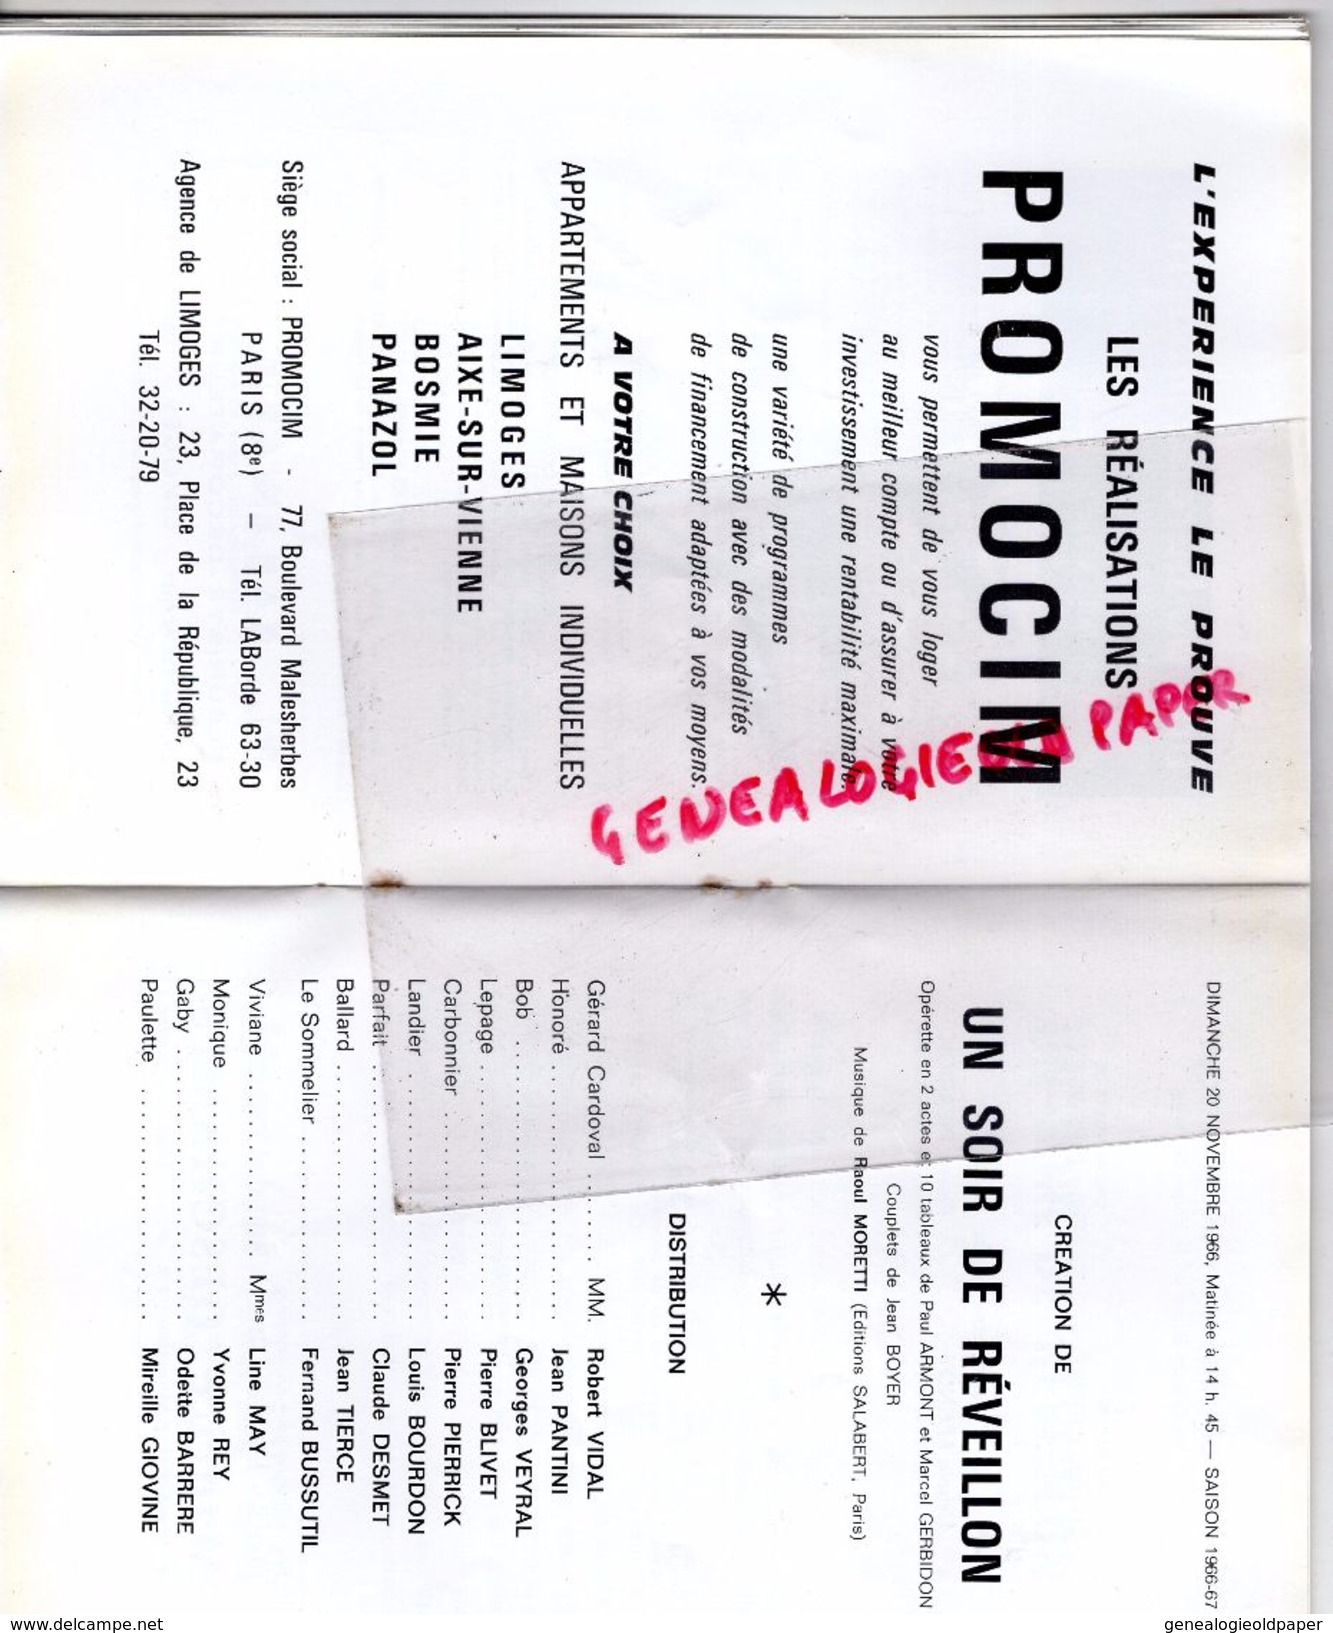 87 - LIMOGES - PROGRAMME GRAND THEATRE 20-11-1966-UN SOIR DE REVEILLON-RAOUL MORETTI-VIDAL-PANTINI-LEGRAND-LACHANIETTE- - Programs